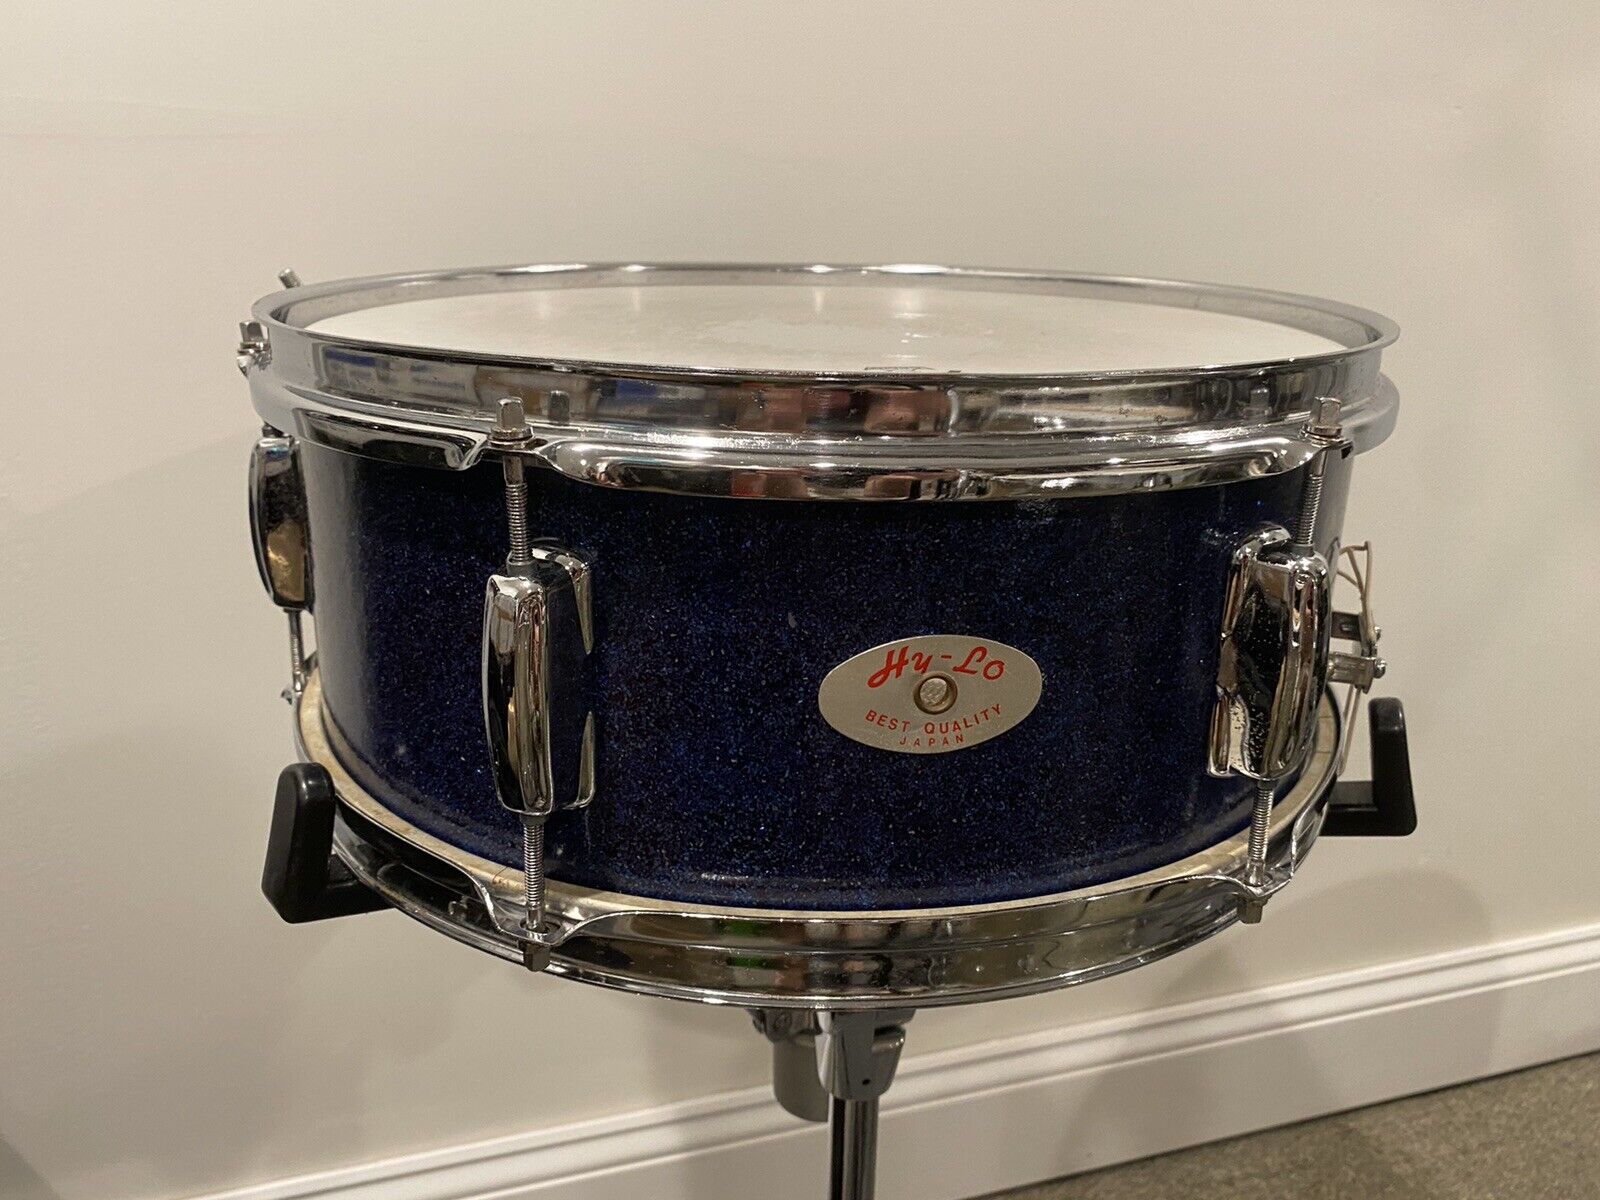 Hy-Lo Snare Drum - Blue Sparkle 14” - Vintage MIJ Drum